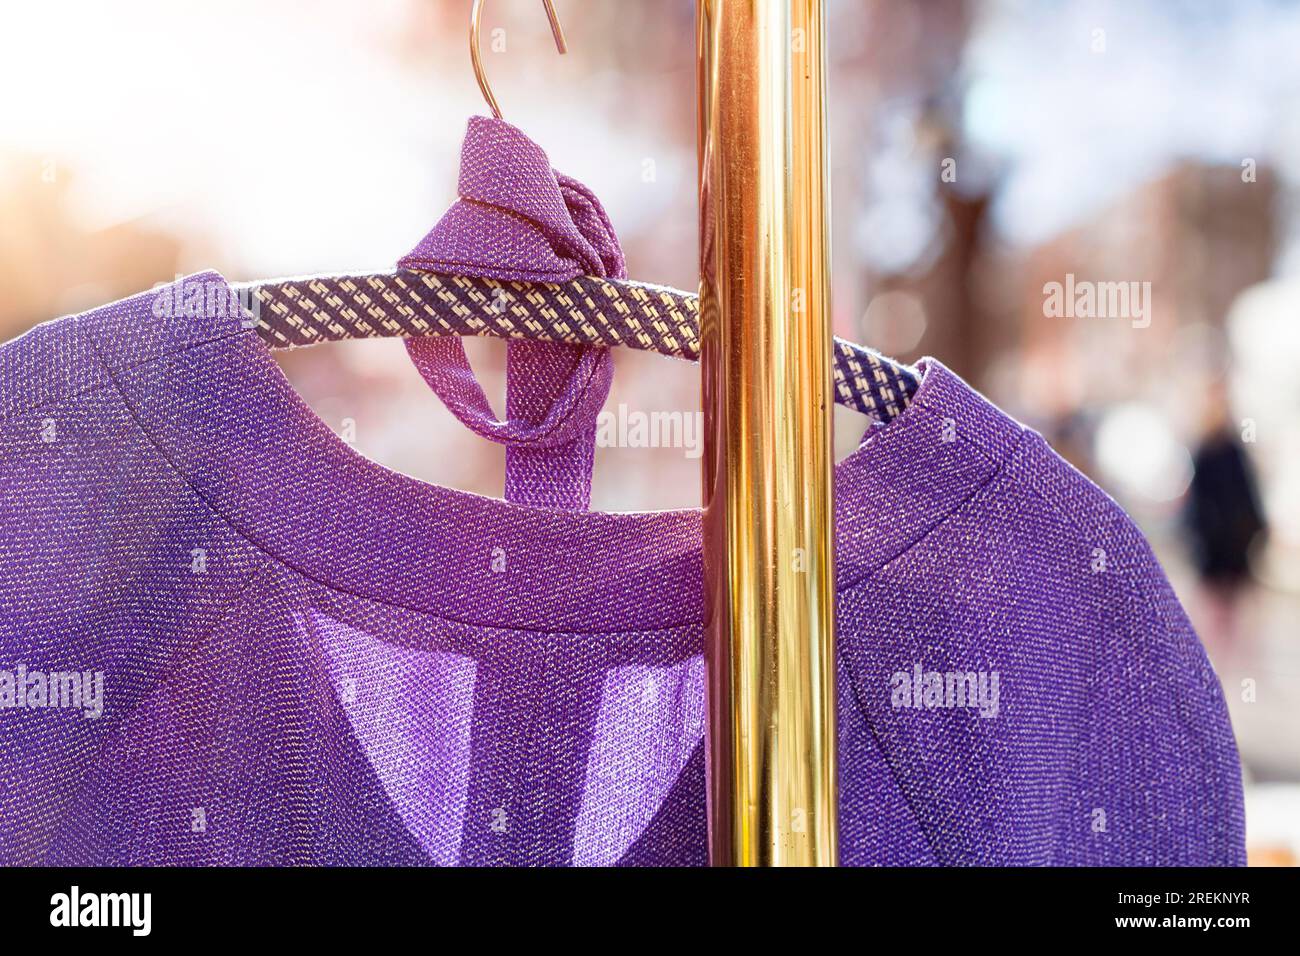 Pullover accroché sur une tringle de garde-robe sur un marché aux puces Banque D'Images